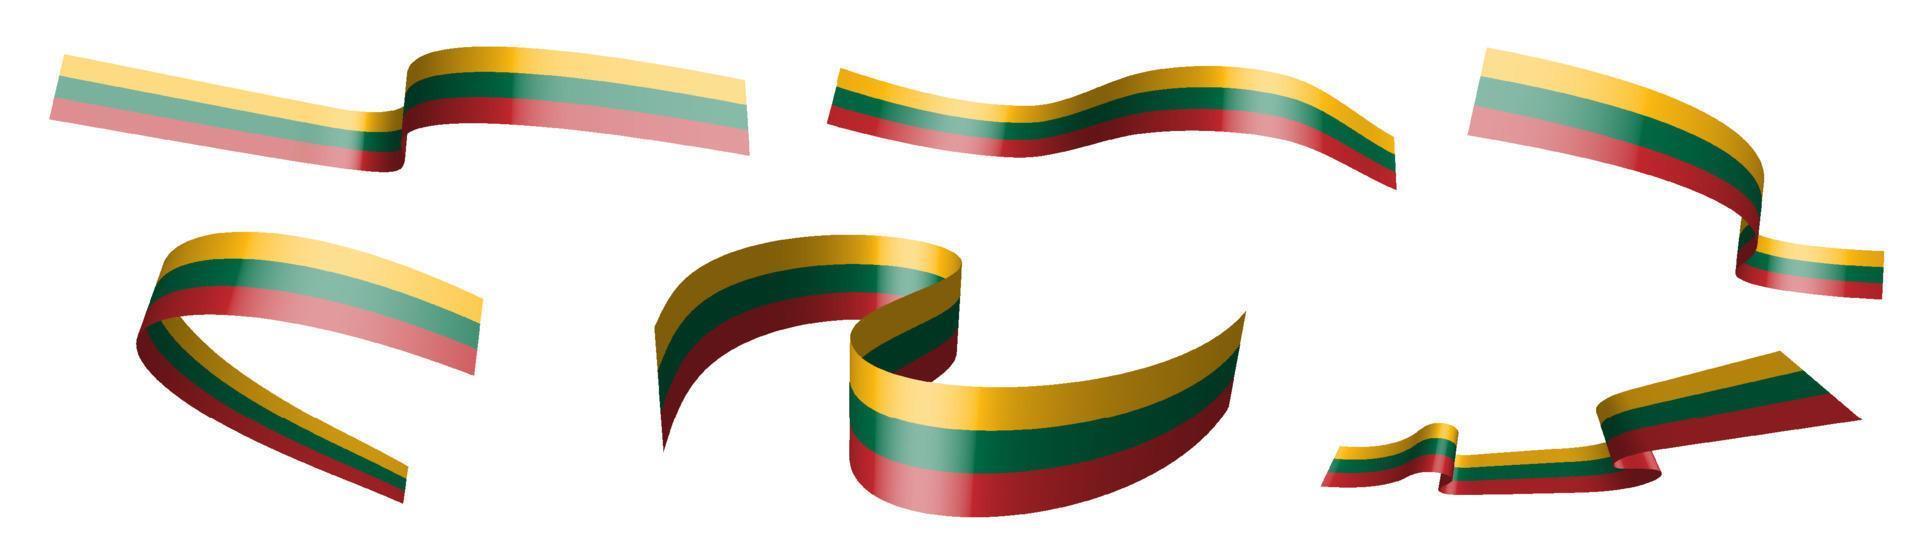 conjunto de cintas de vacaciones. bandera de lituania ondeando en el viento. separación en capas superior e inferior. elemento de diseño vector sobre fondo blanco